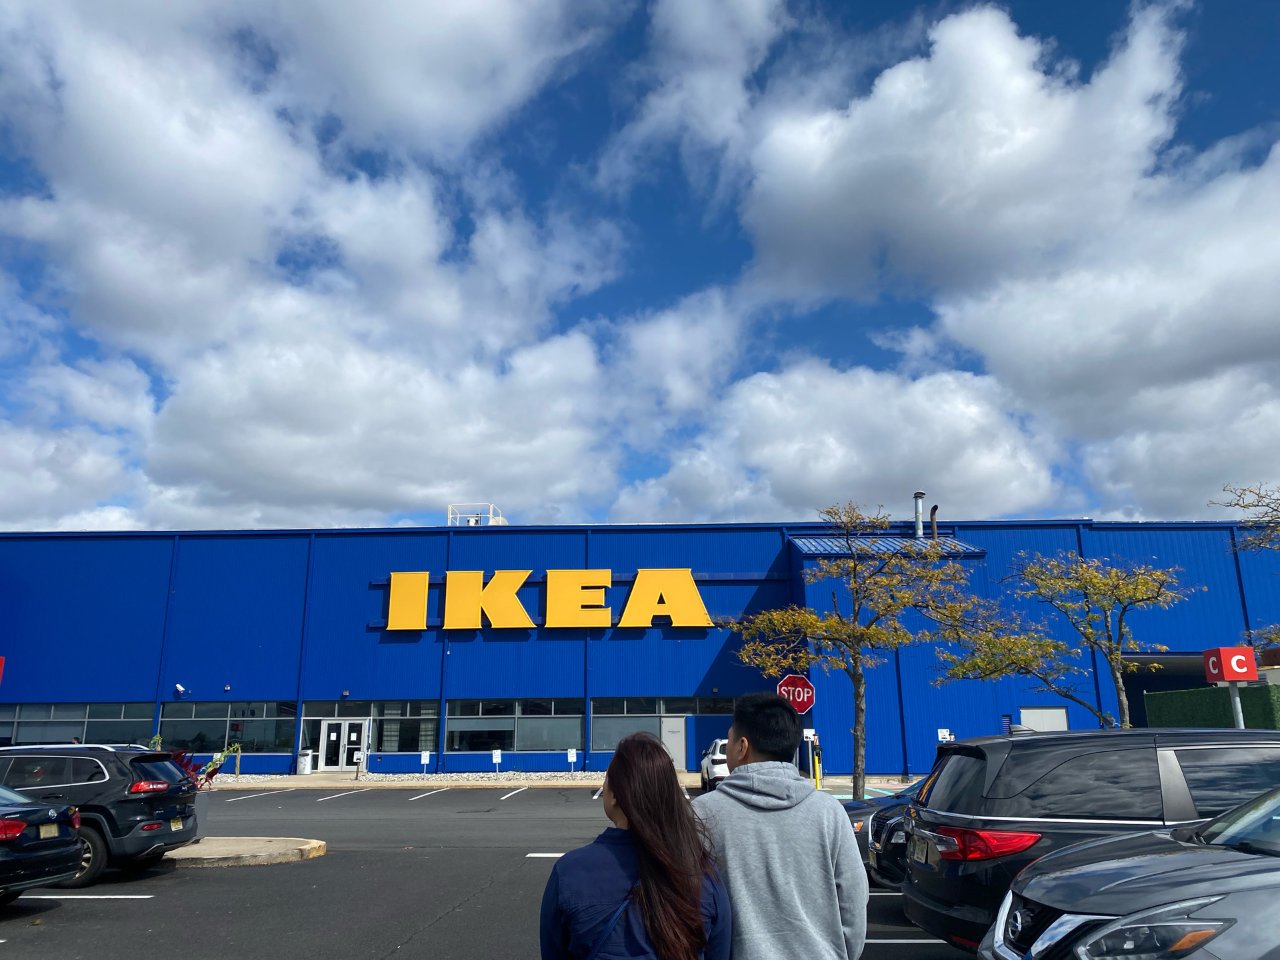 周末约｜约在IKEA ...